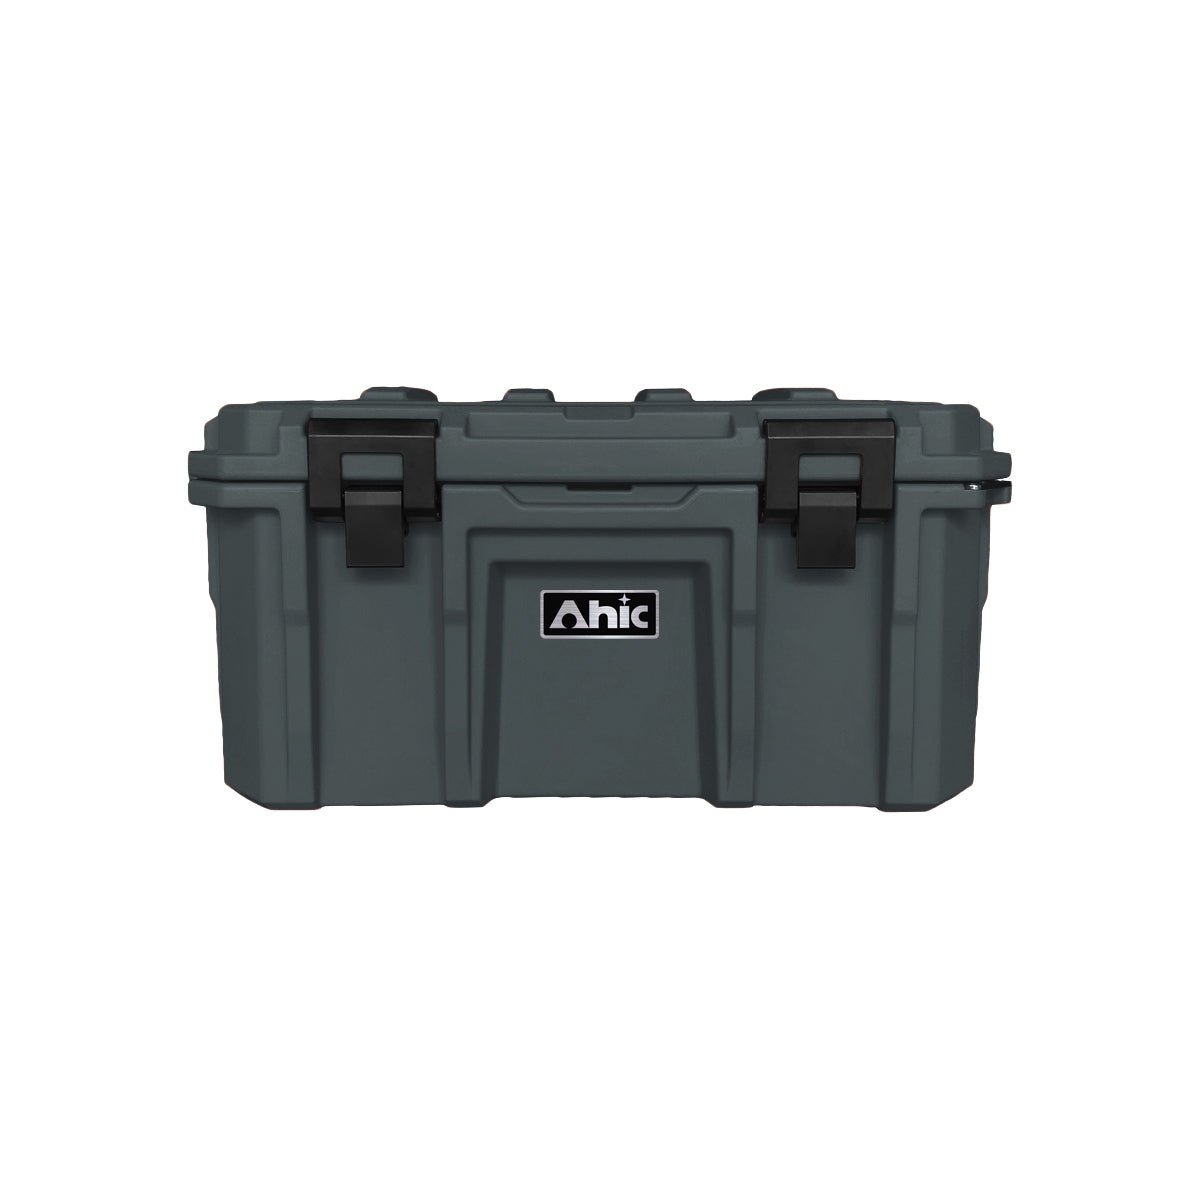 AHIC 50L AHIC Premium Tool box with internal basket - Grey | AHIC | A247 Gear